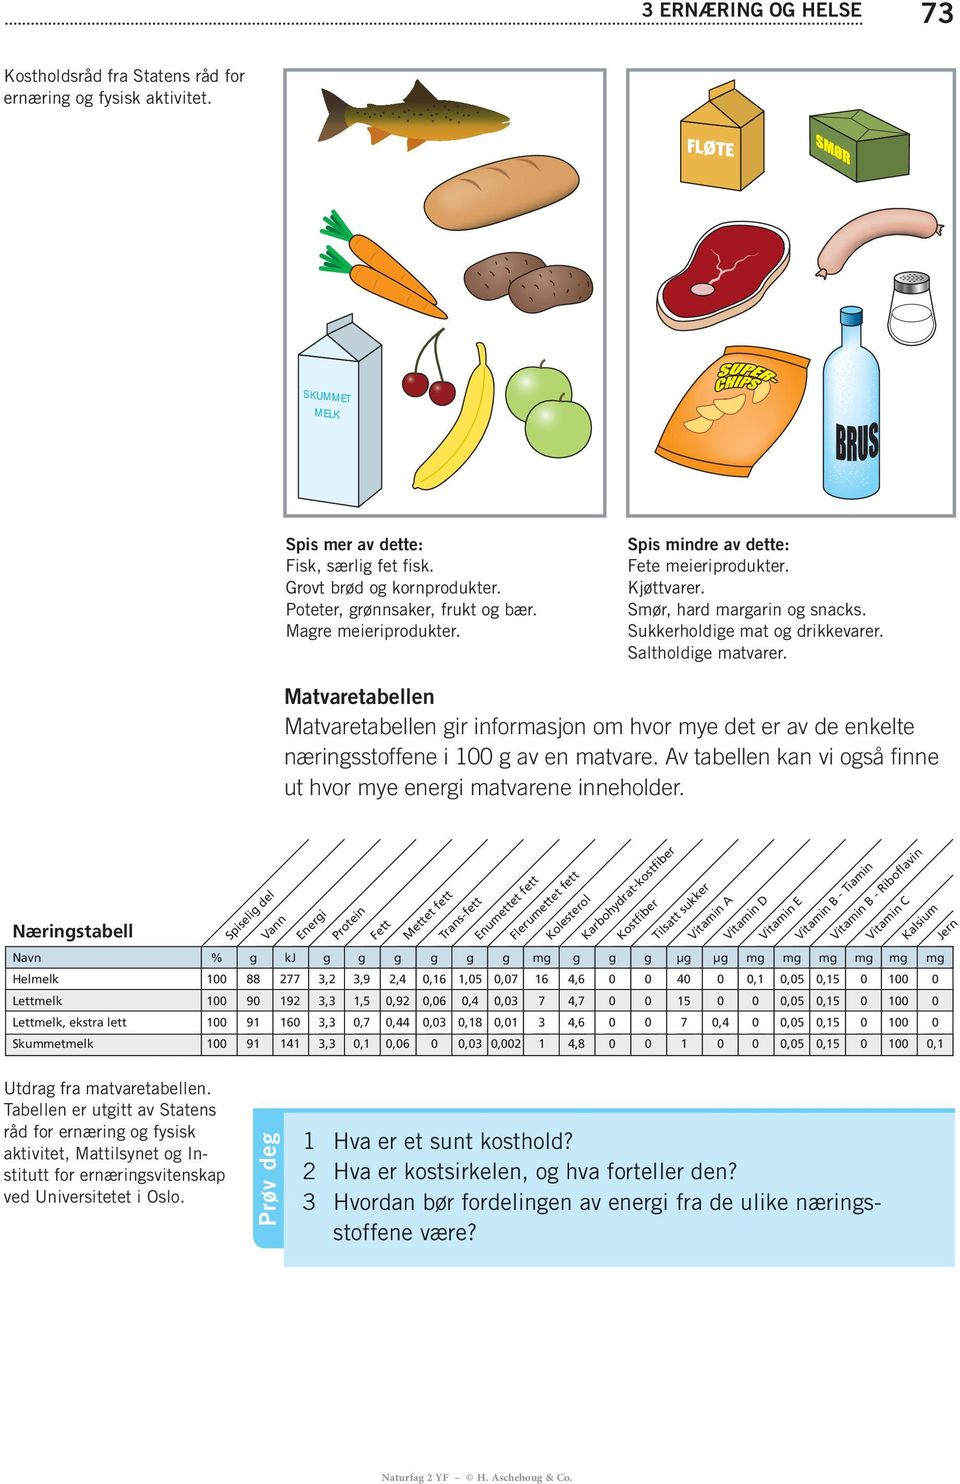 Av tabellen kan vi også finne ut hvor mye energi matvarene inneholder.